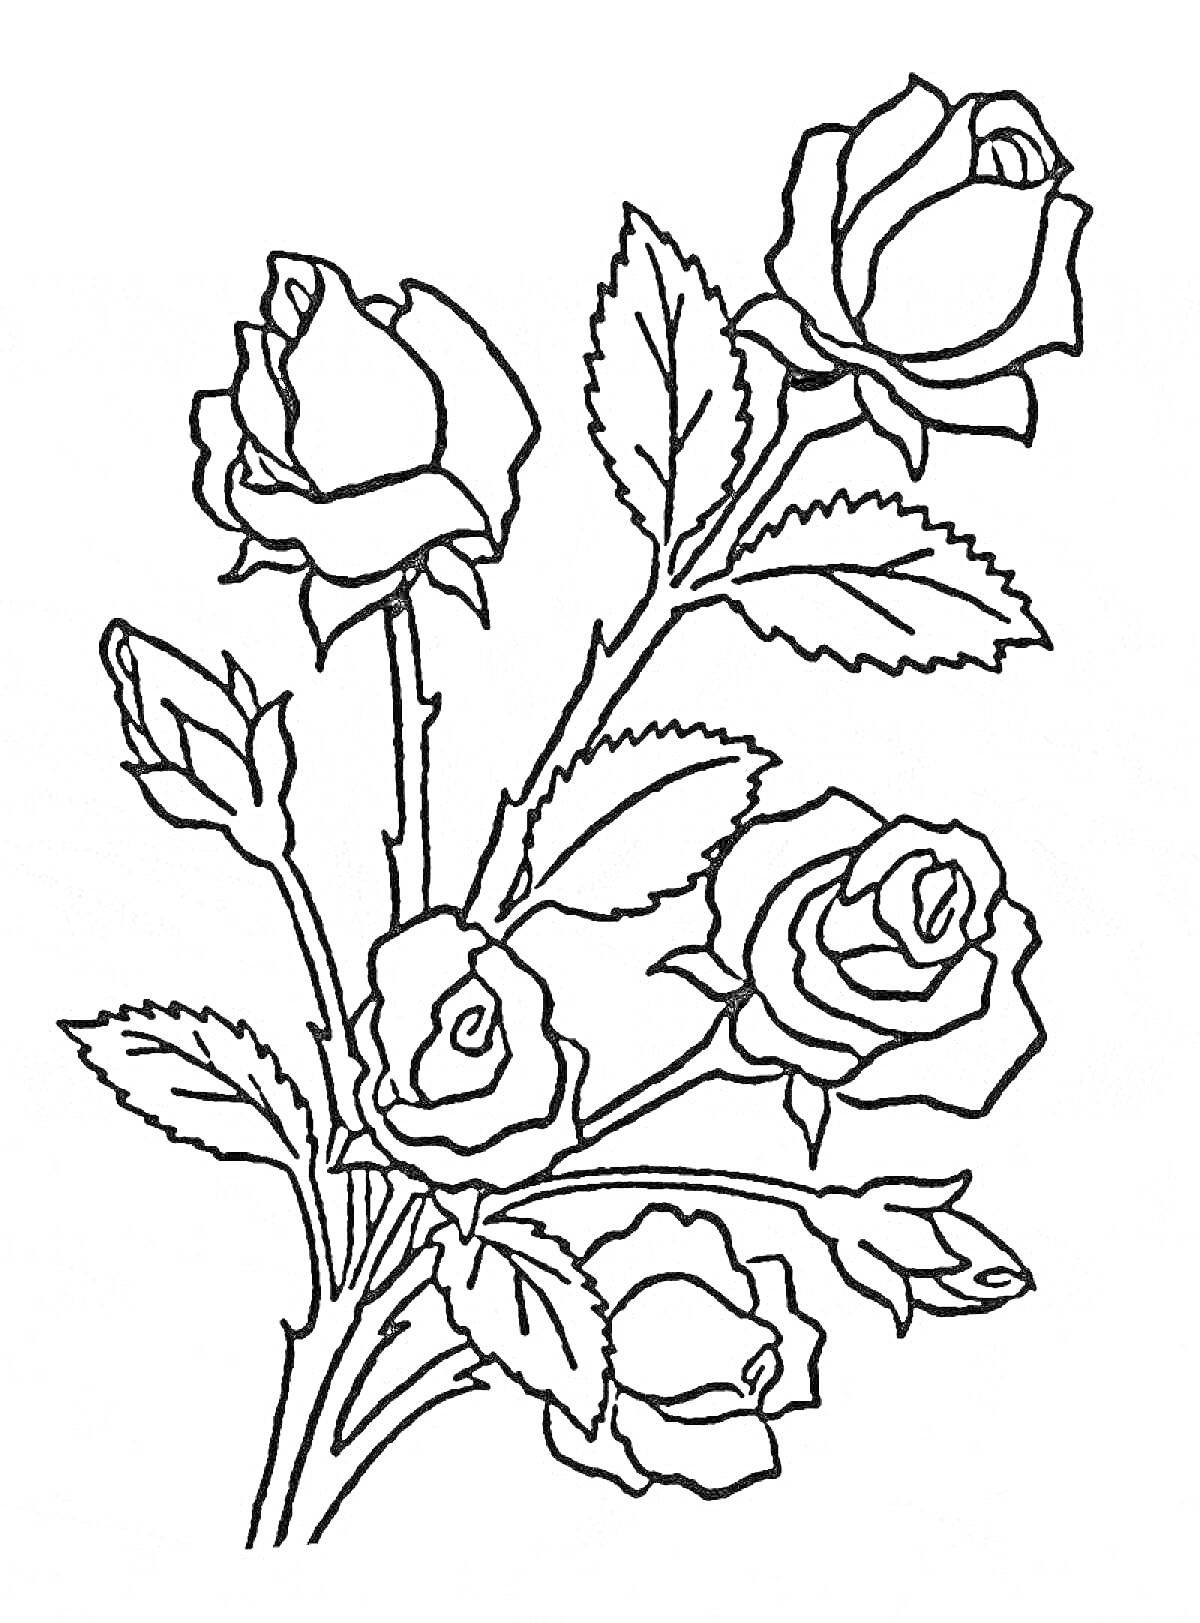 Раскраска Букет роз на ветке с листьями, состоящий из пяти розовых соцветий